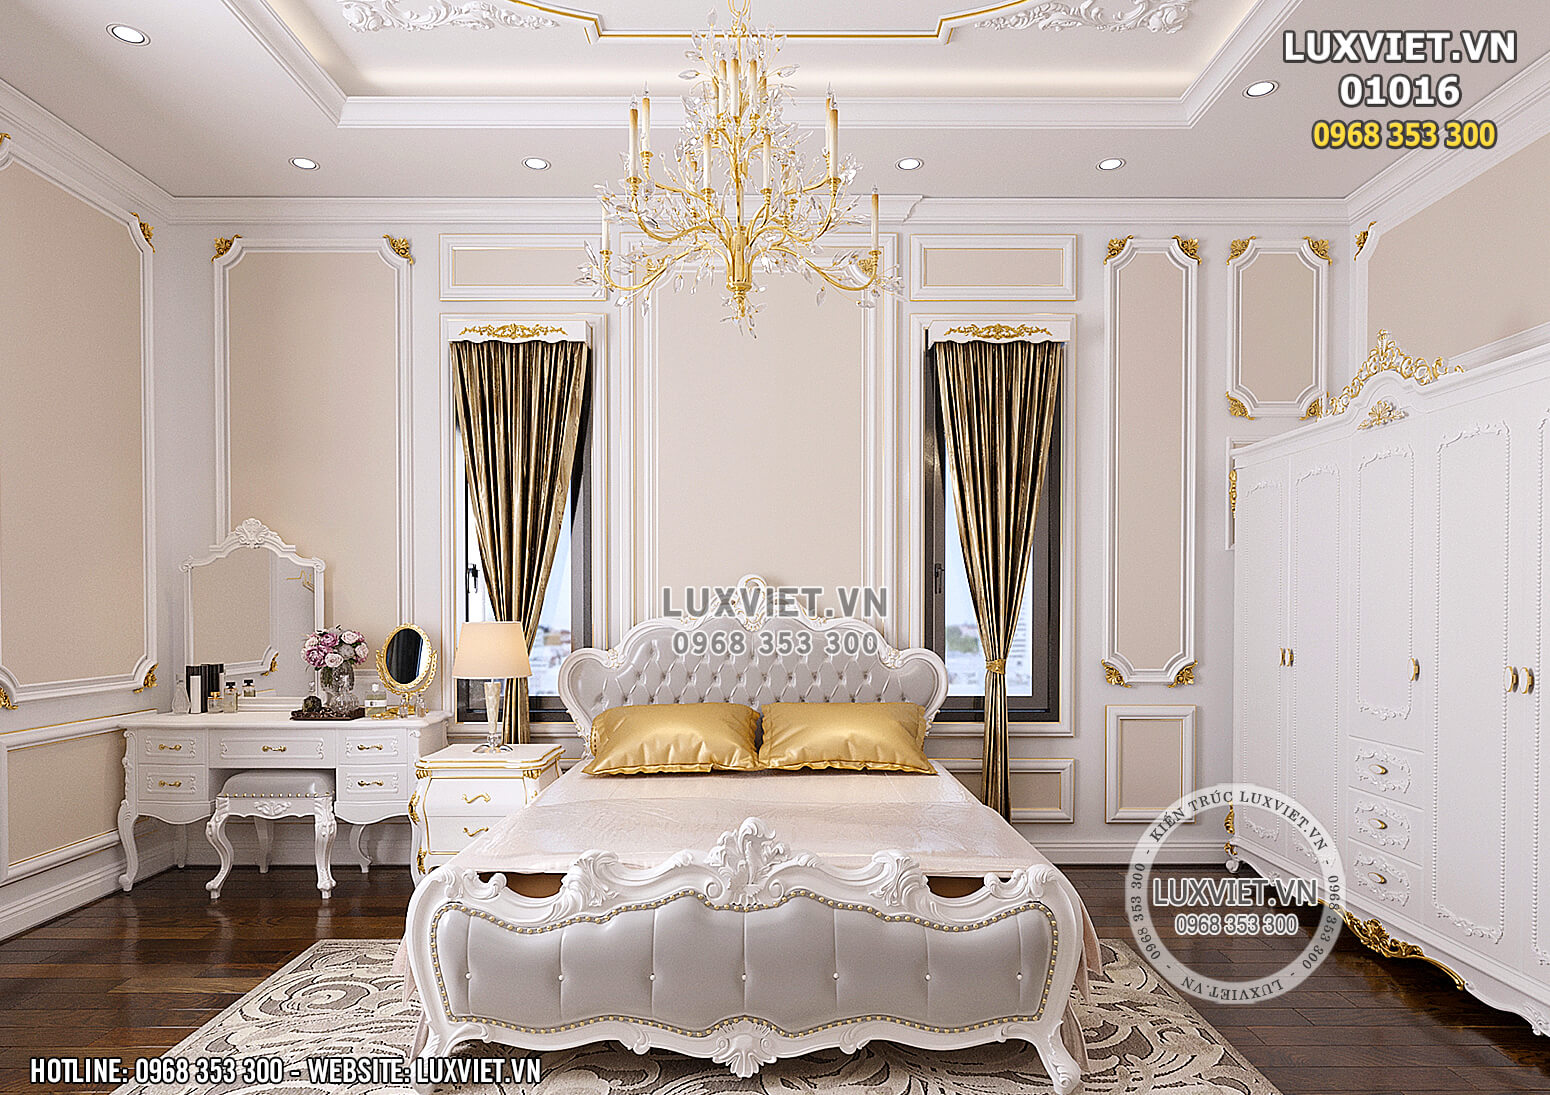 Hình ảnh: Không gian phòng ngủ của mẫu thiết kế nội thất tân cổ điển